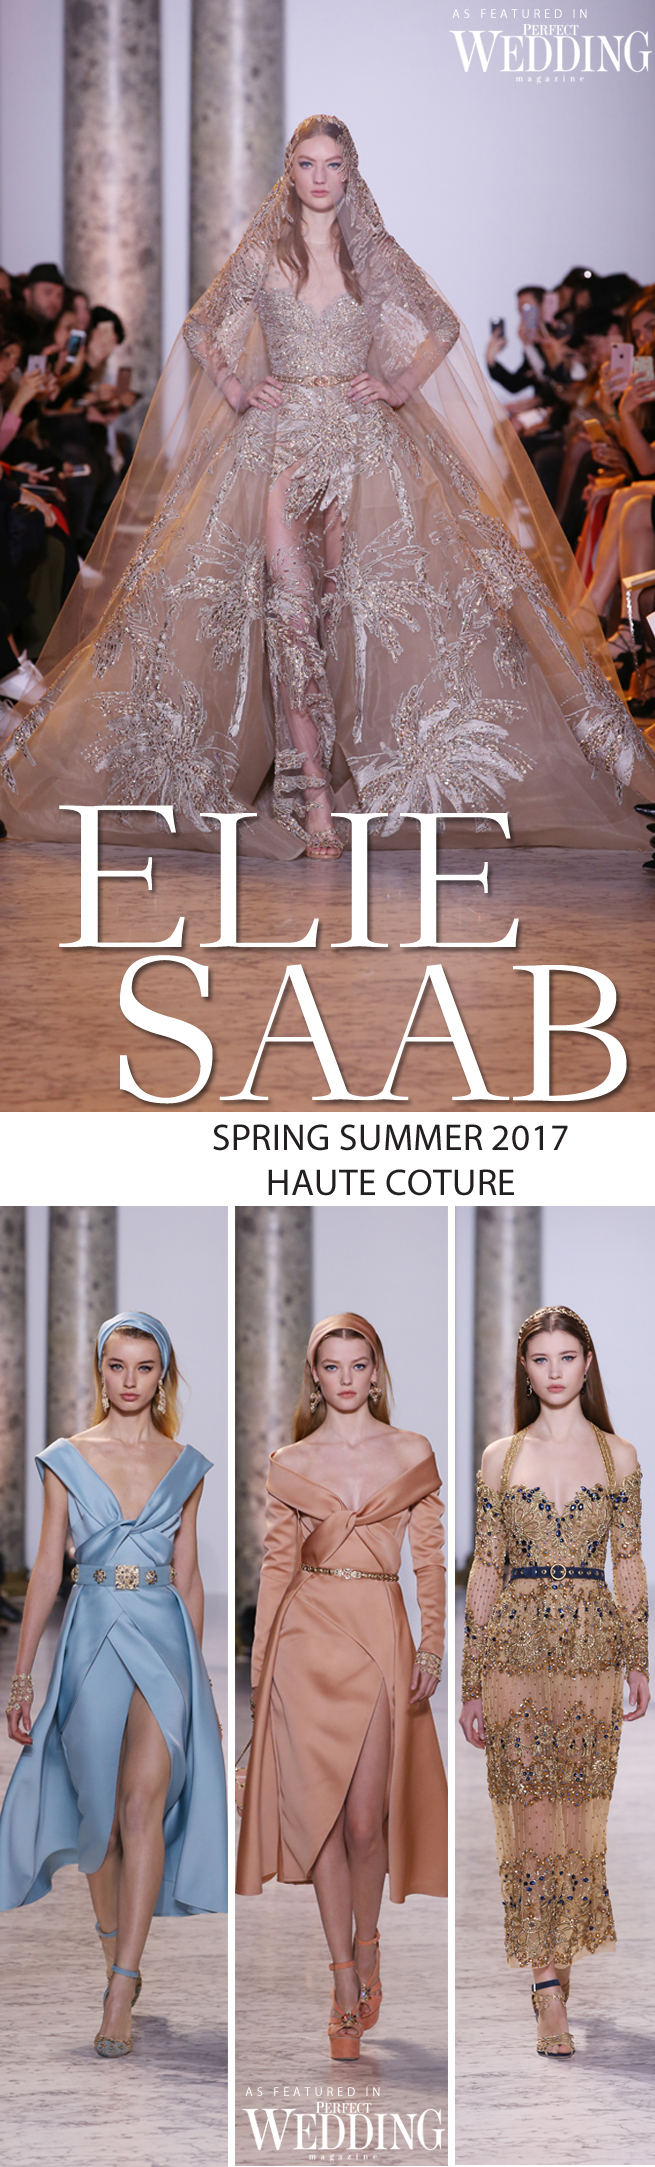 Elie Saab, Elie Saab Couture, Elie Saab Haute Couture, Elie Saab Spring Summer 2017 Haute Couture, Perfect Wedding Magazine, Perfect Wedding Blog